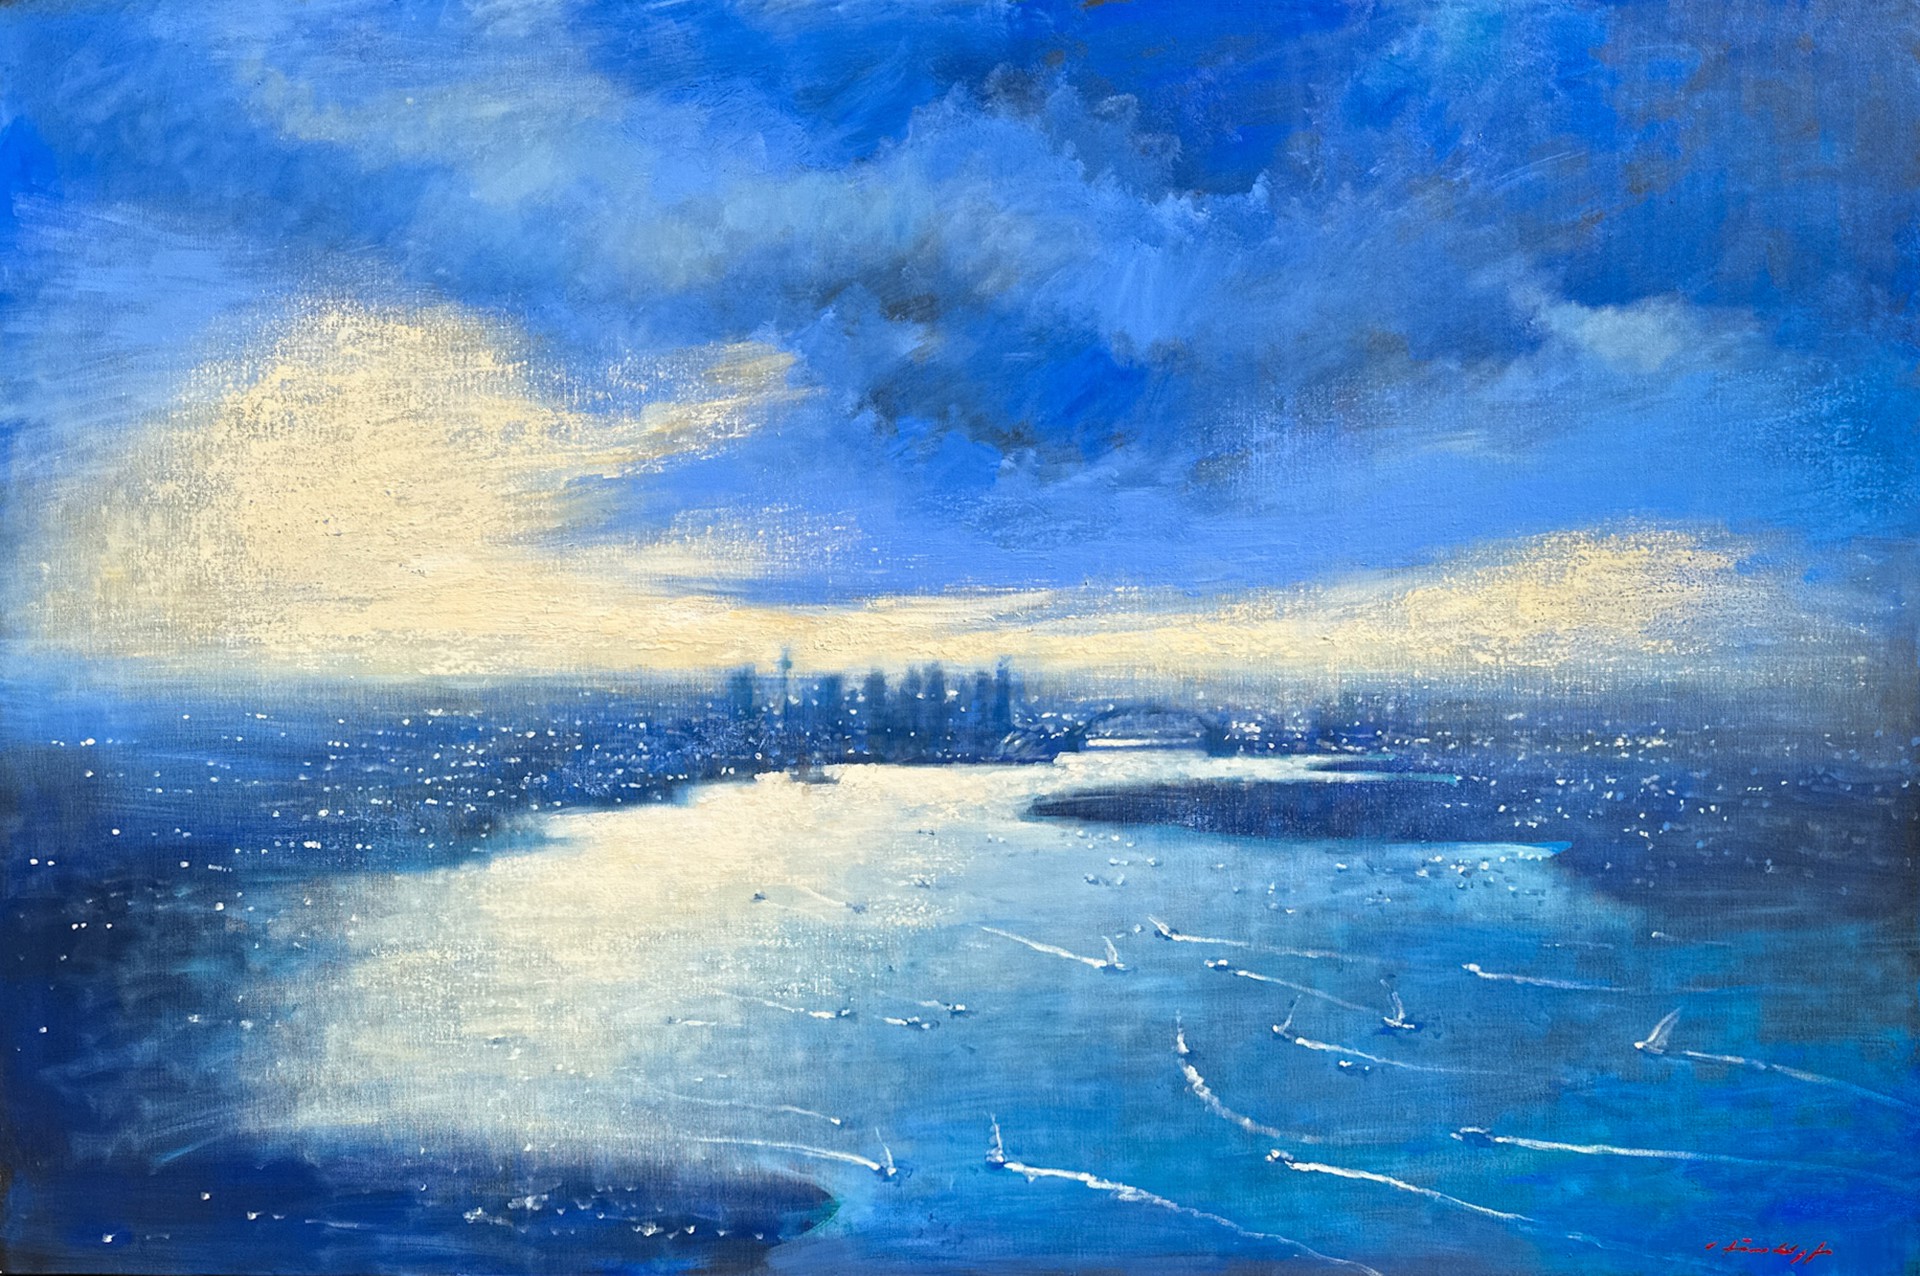 Sydney in Blue by David Hinchliffe